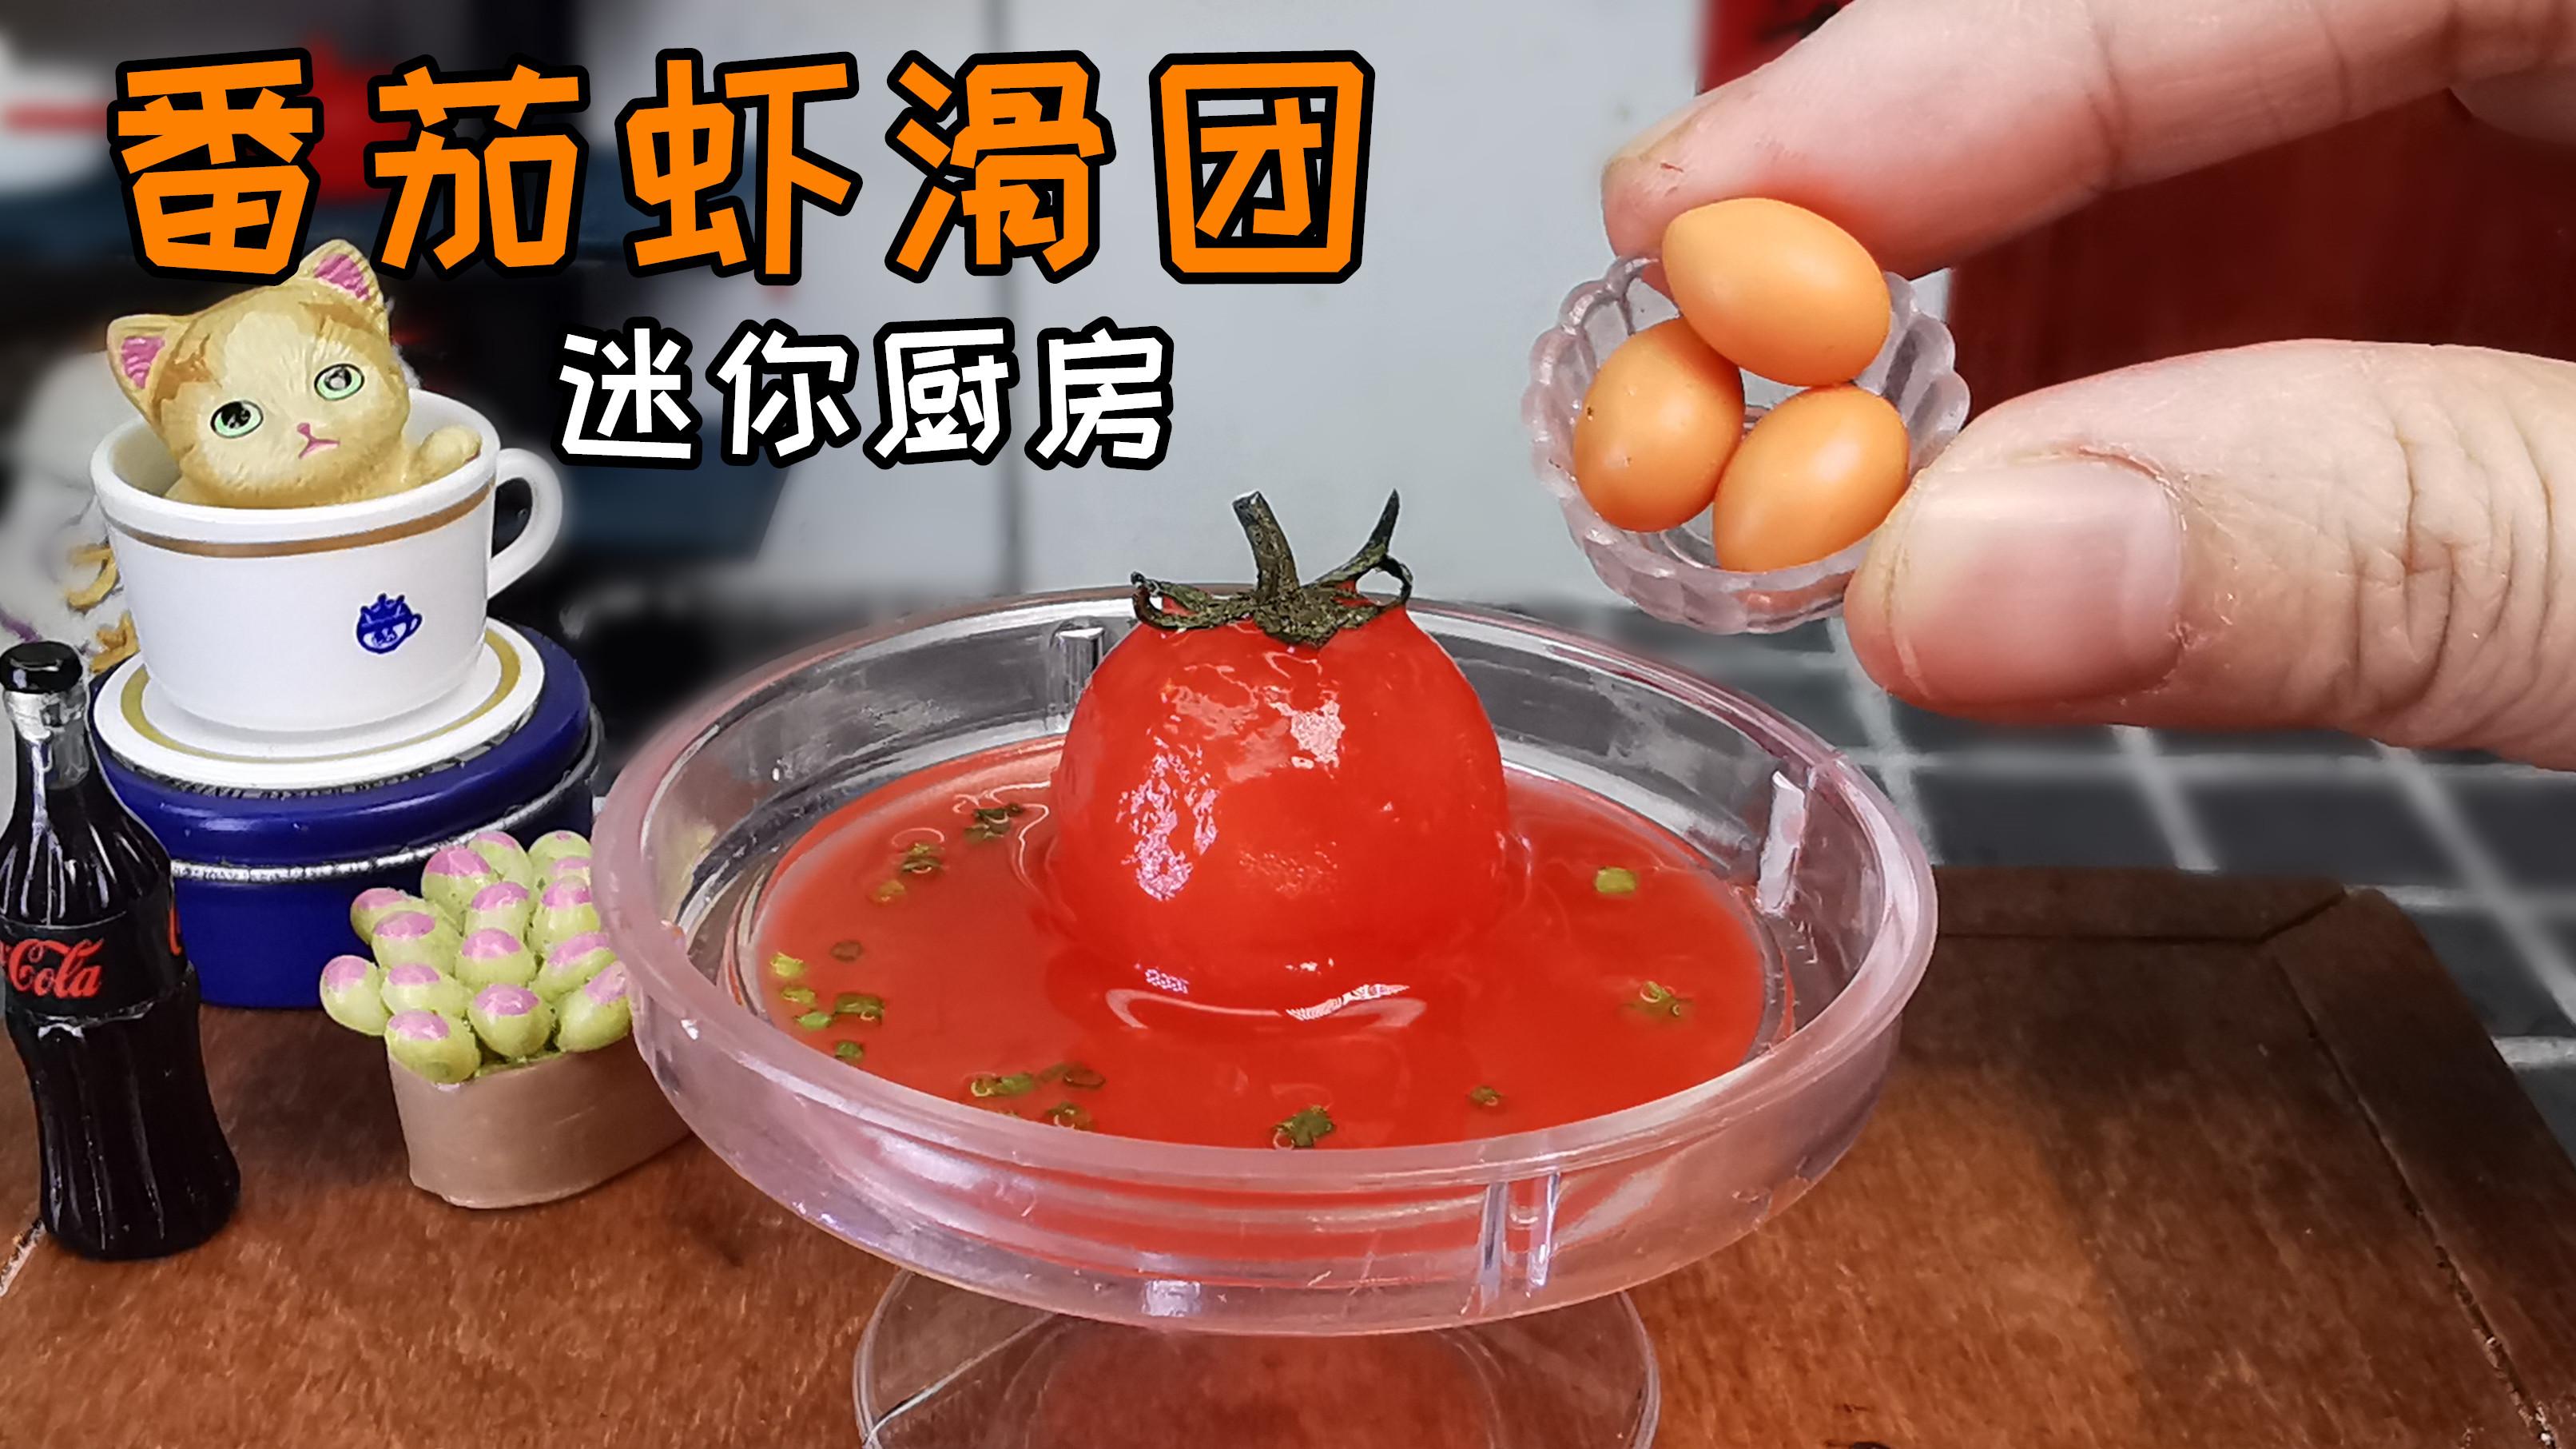 海鲜酸菜火锅的做法_火锅海鲜酸菜做法视频_火锅海鲜酸菜做法窍门